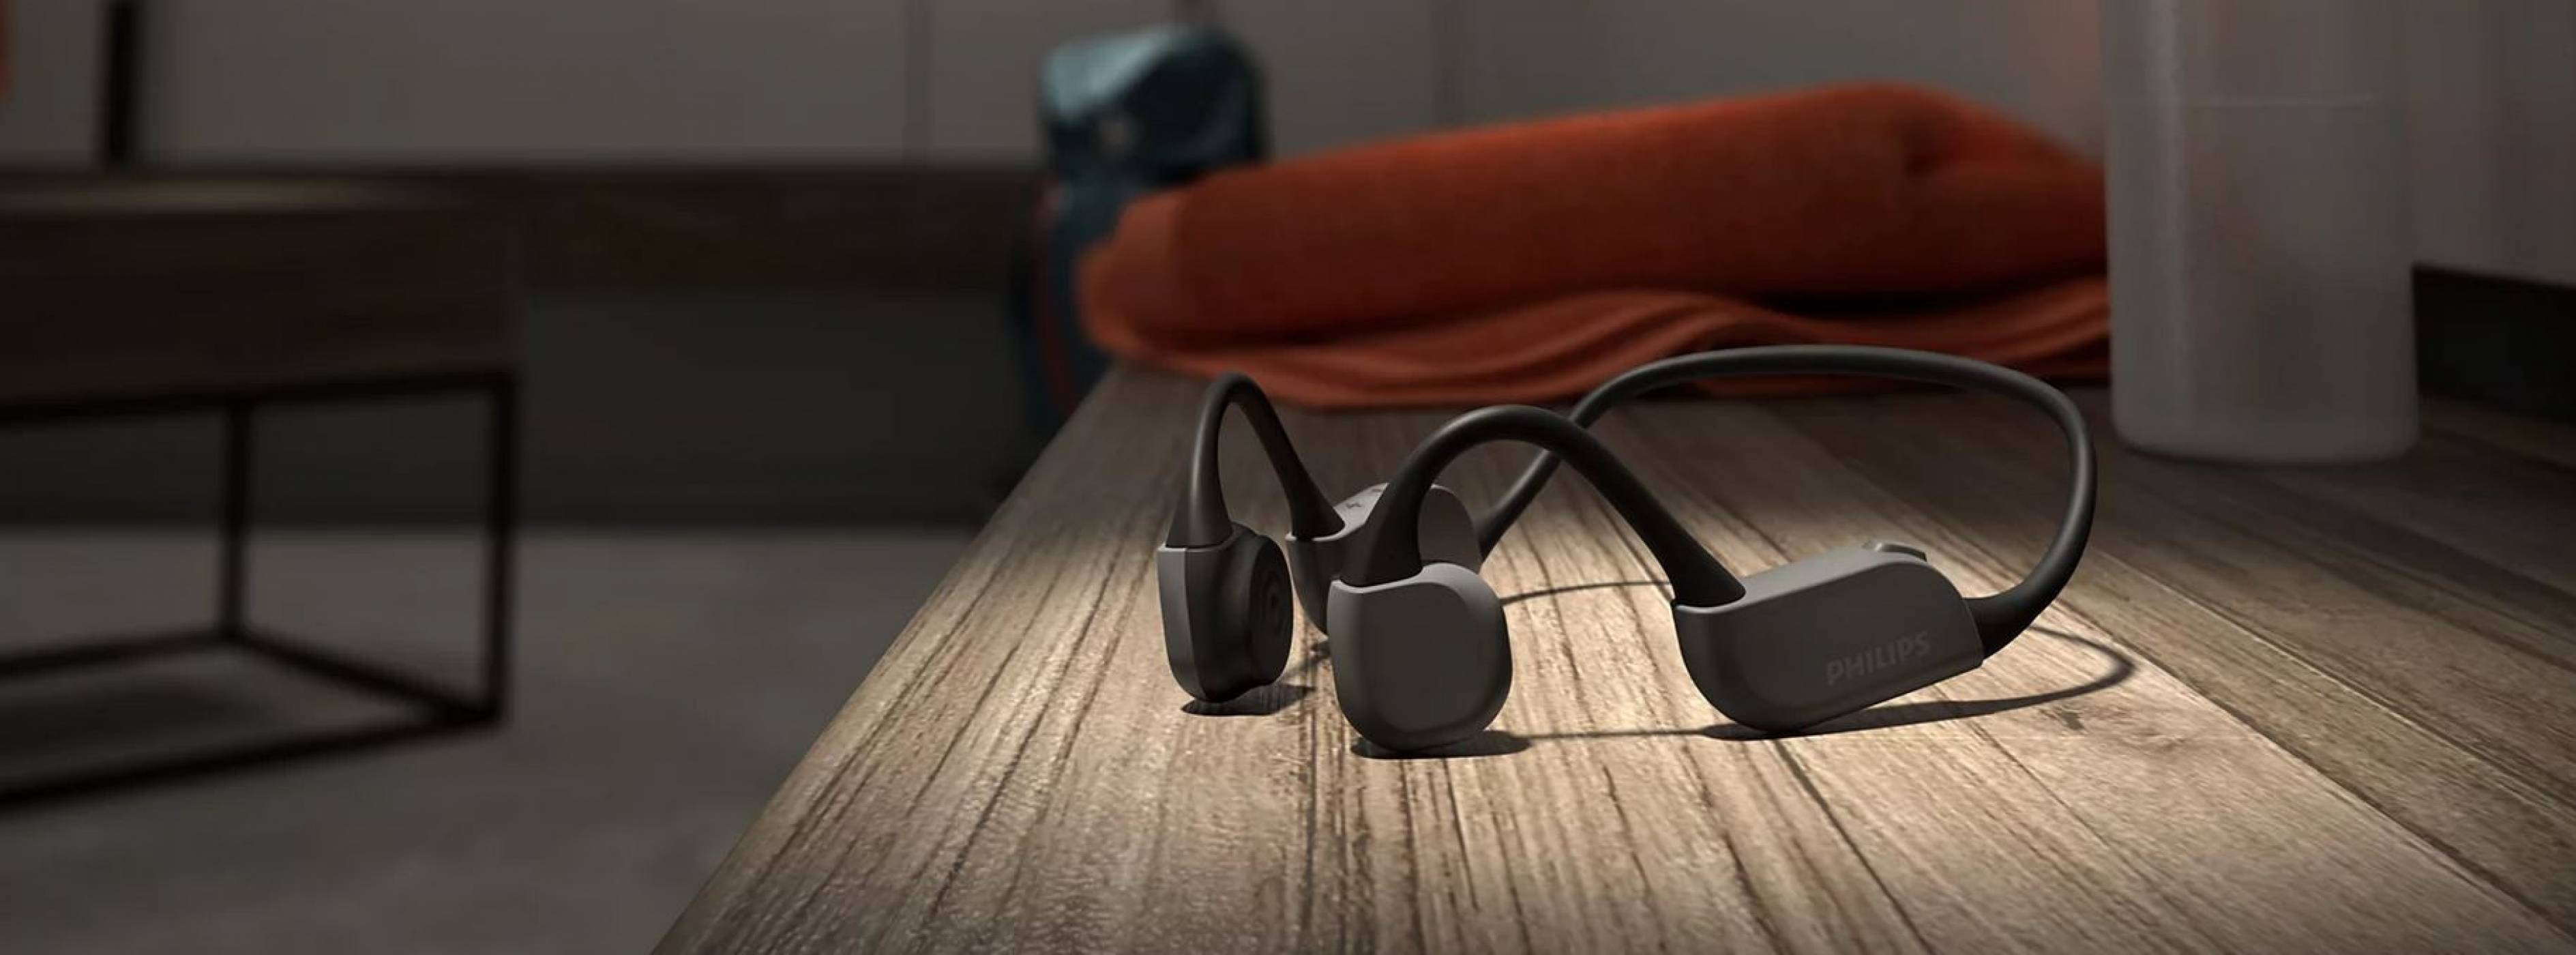 Спорт и музика: новите модели слушалки от Philips радват с нови технологии, удобни за спорт екстри и качествен звук 